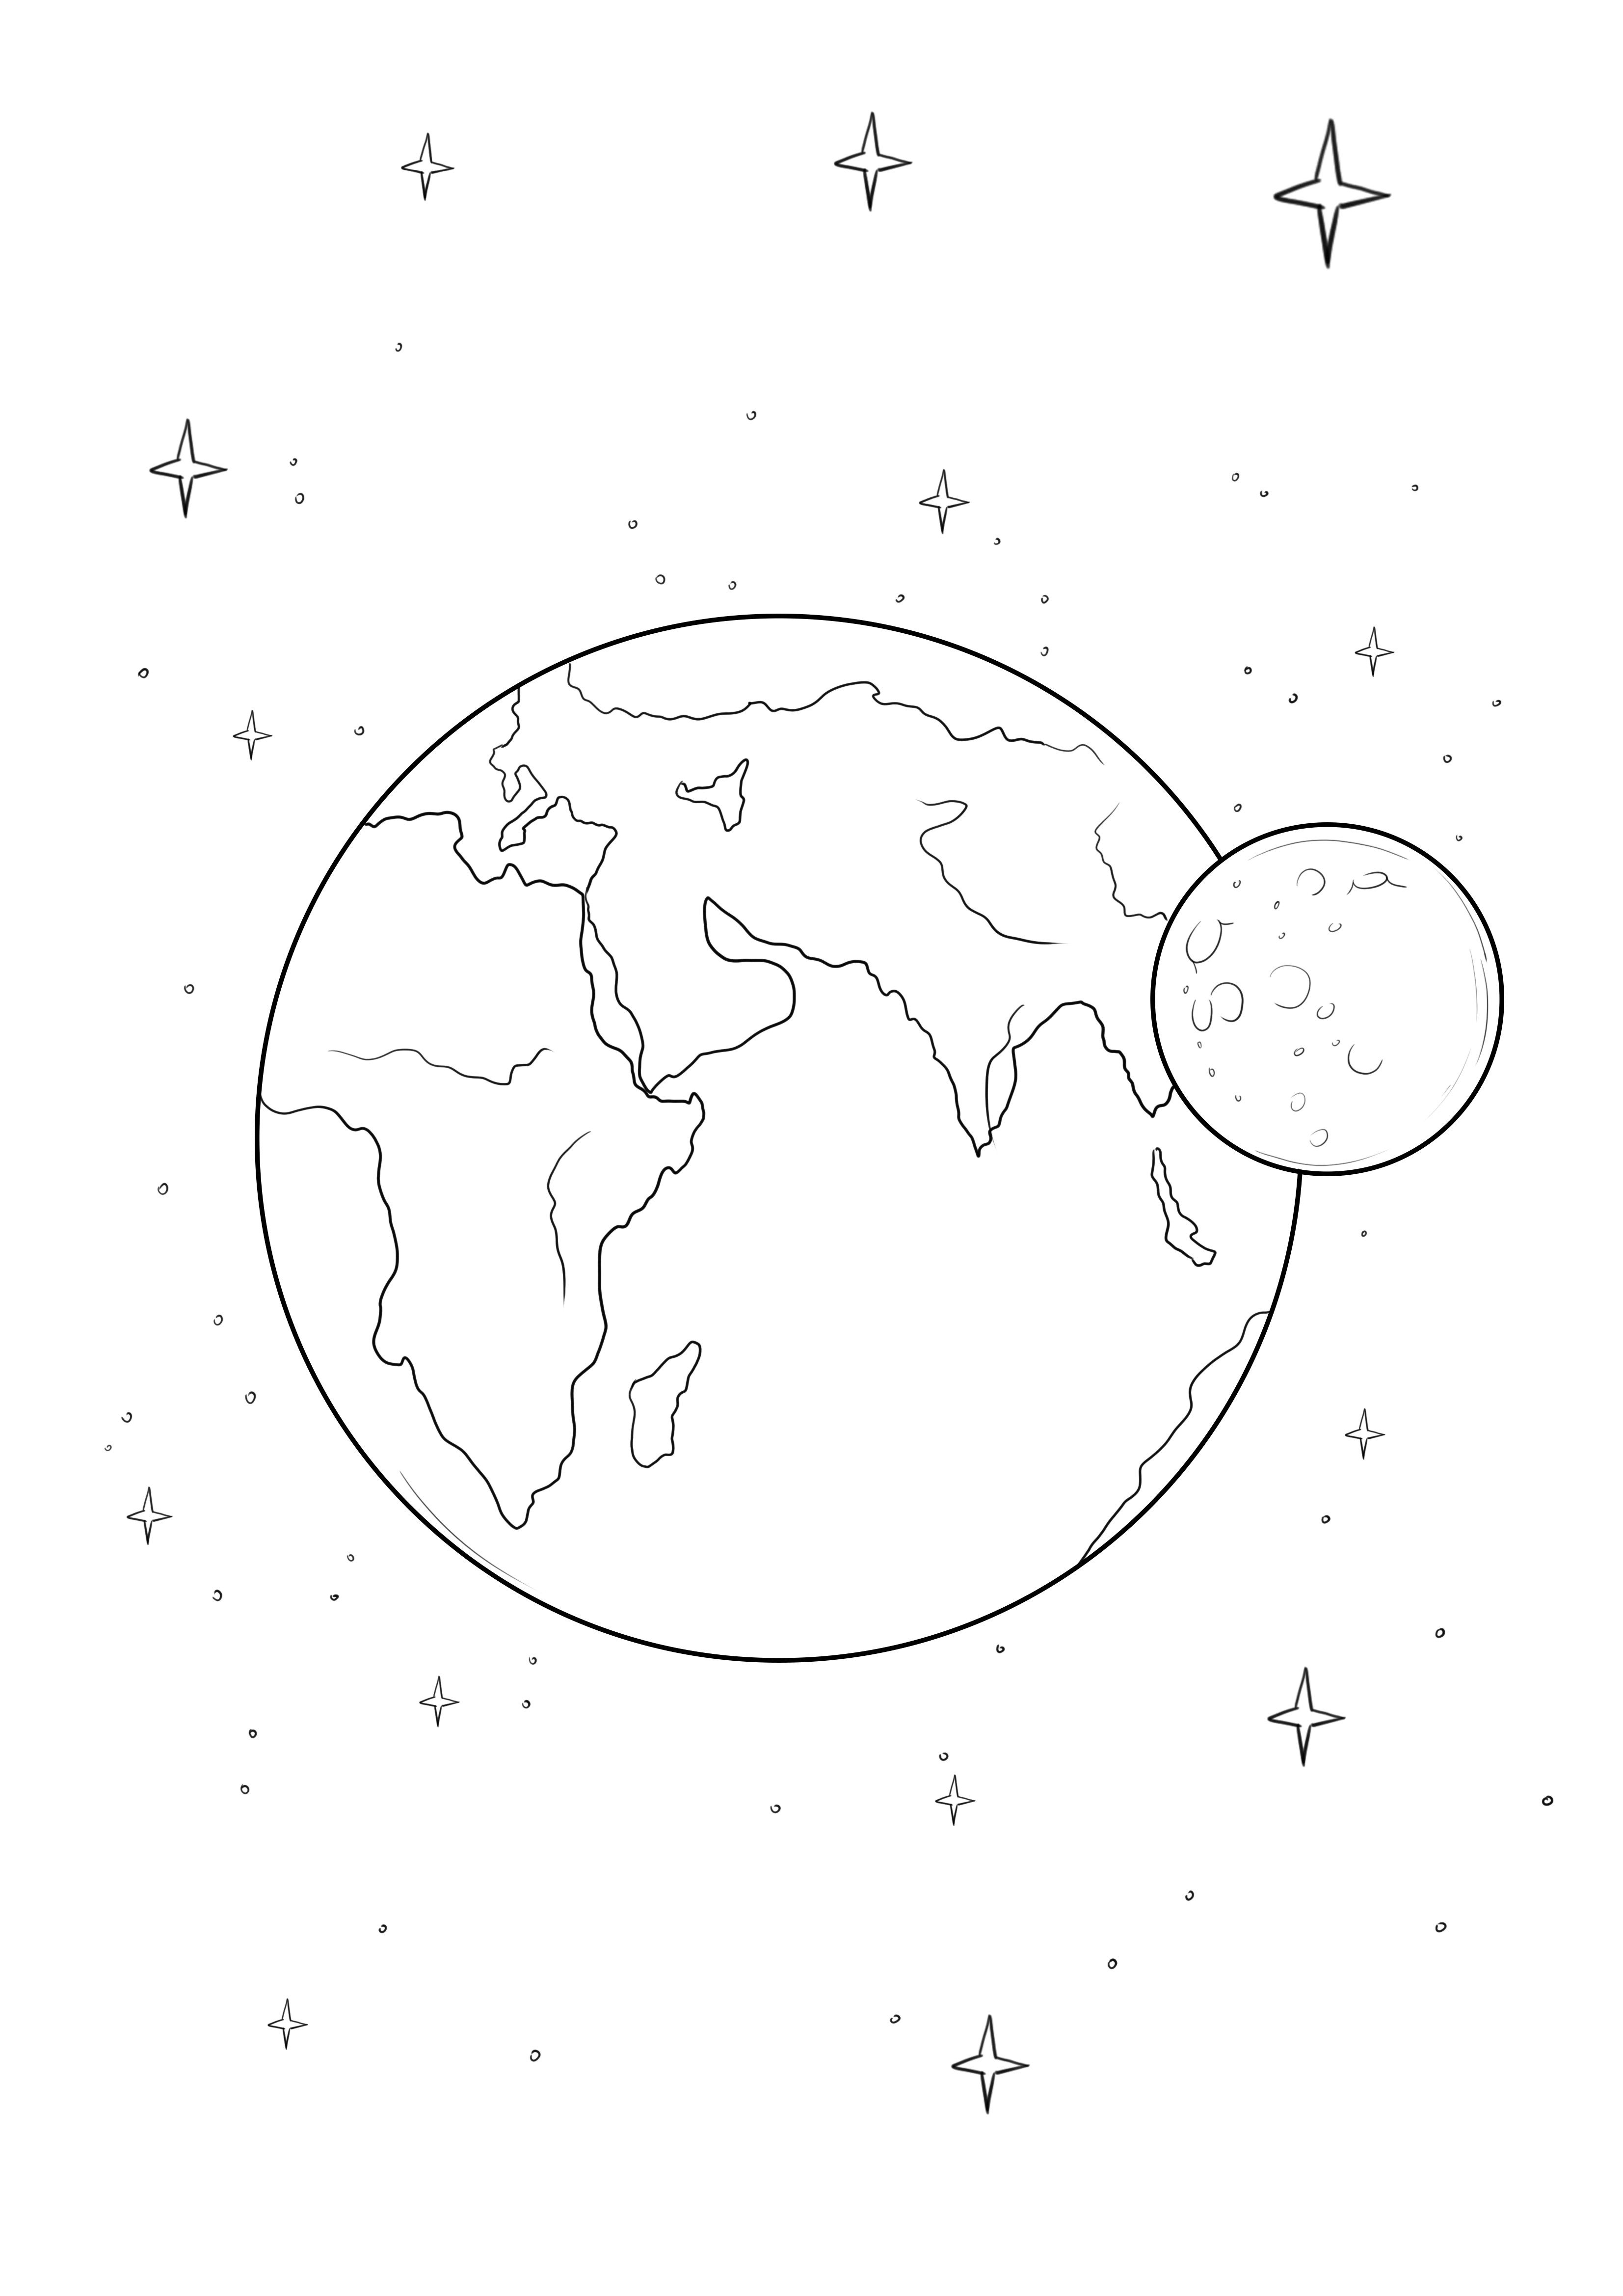 Imagen imprimible gratis de la Tierra y la Luna para colorear fácilmente